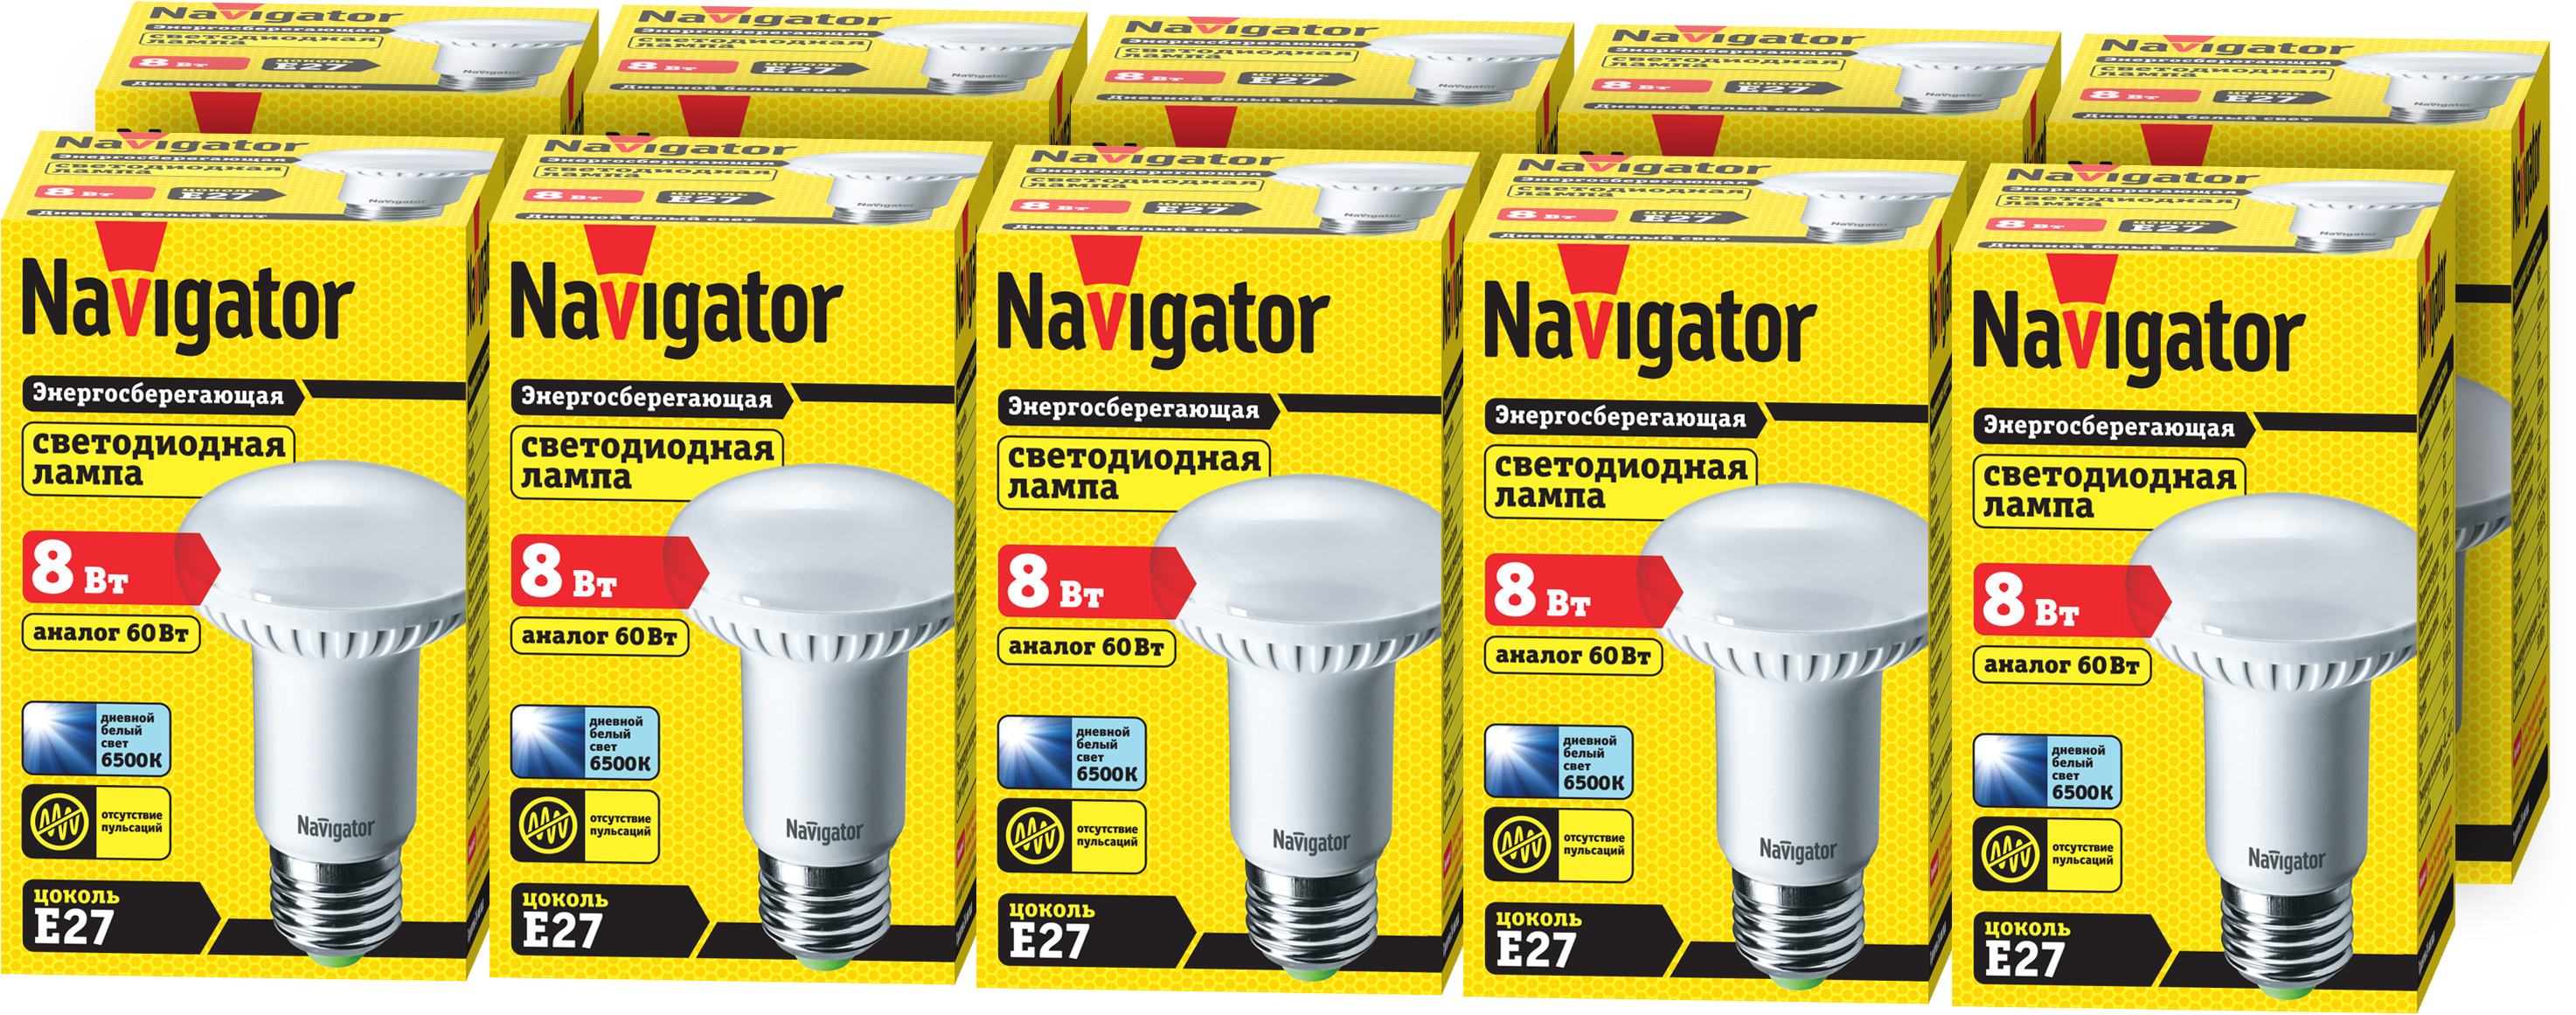 Лампа светодиодная Navigator 61 257, рефлектор, 8 Вт, Е27, 6500К, упаковка 10 шт.